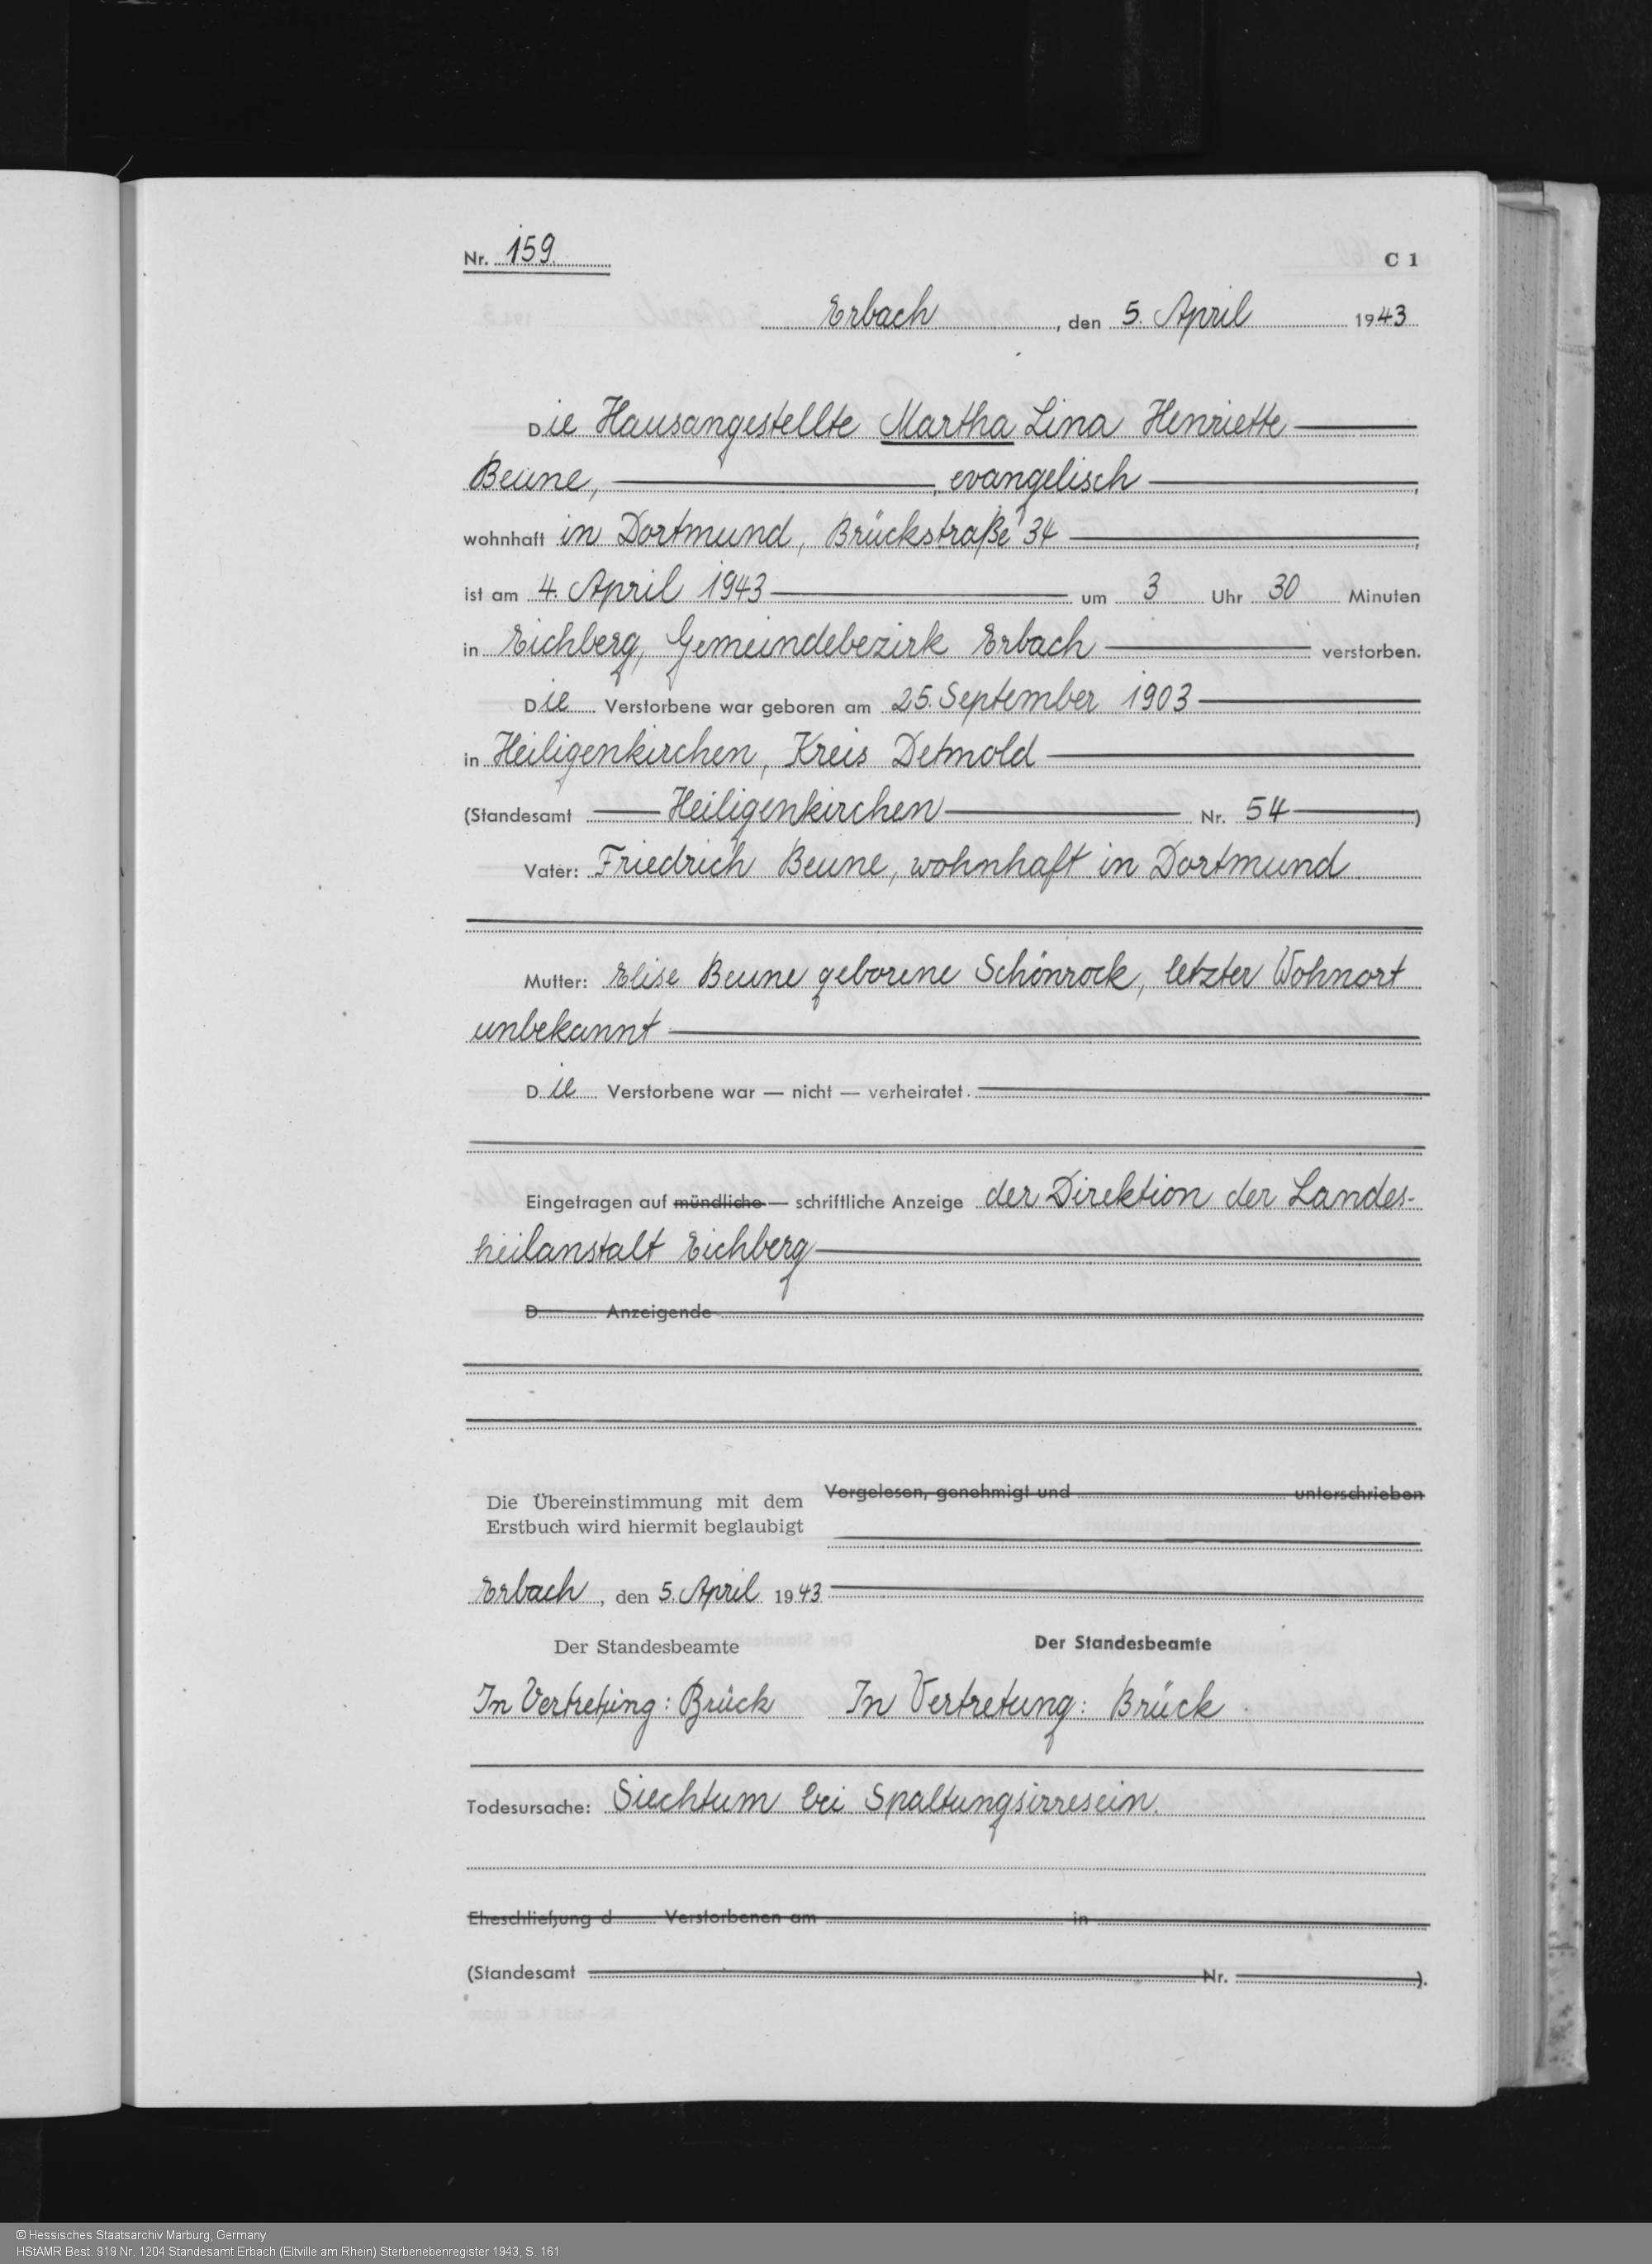 Sterbeurkunde für Martha Beune, Erbach 5. 04.1943 (Hess. Staatsarchiv Marburg Best. 919 Nr. 1204)